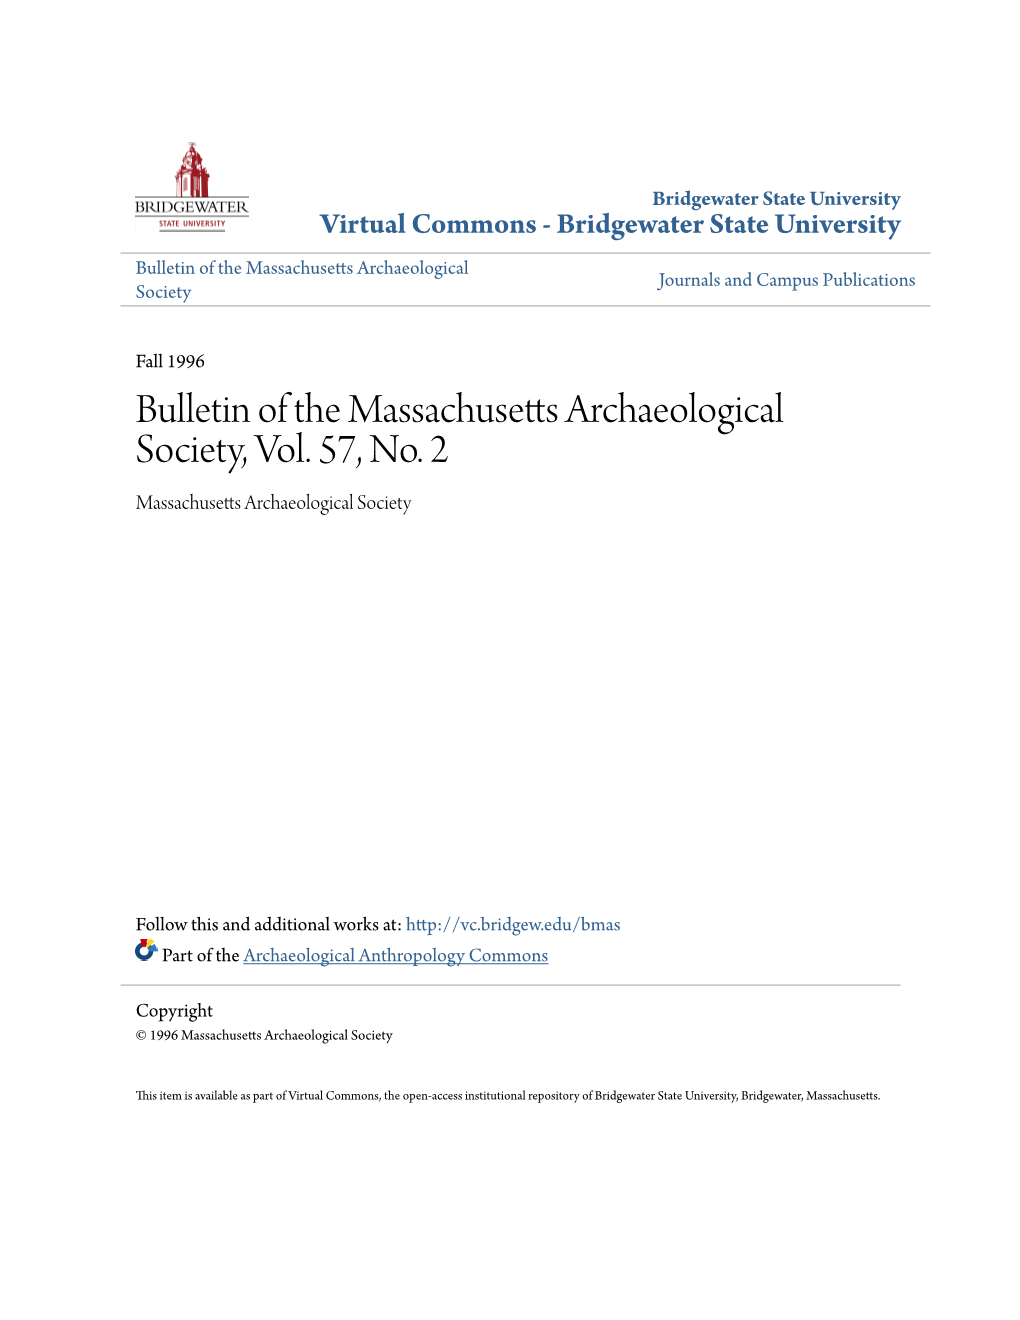 Bulletin of the Massachusetts Archaeological Society, Vol. 57, No. 2 Massachusetts Archaeological Society